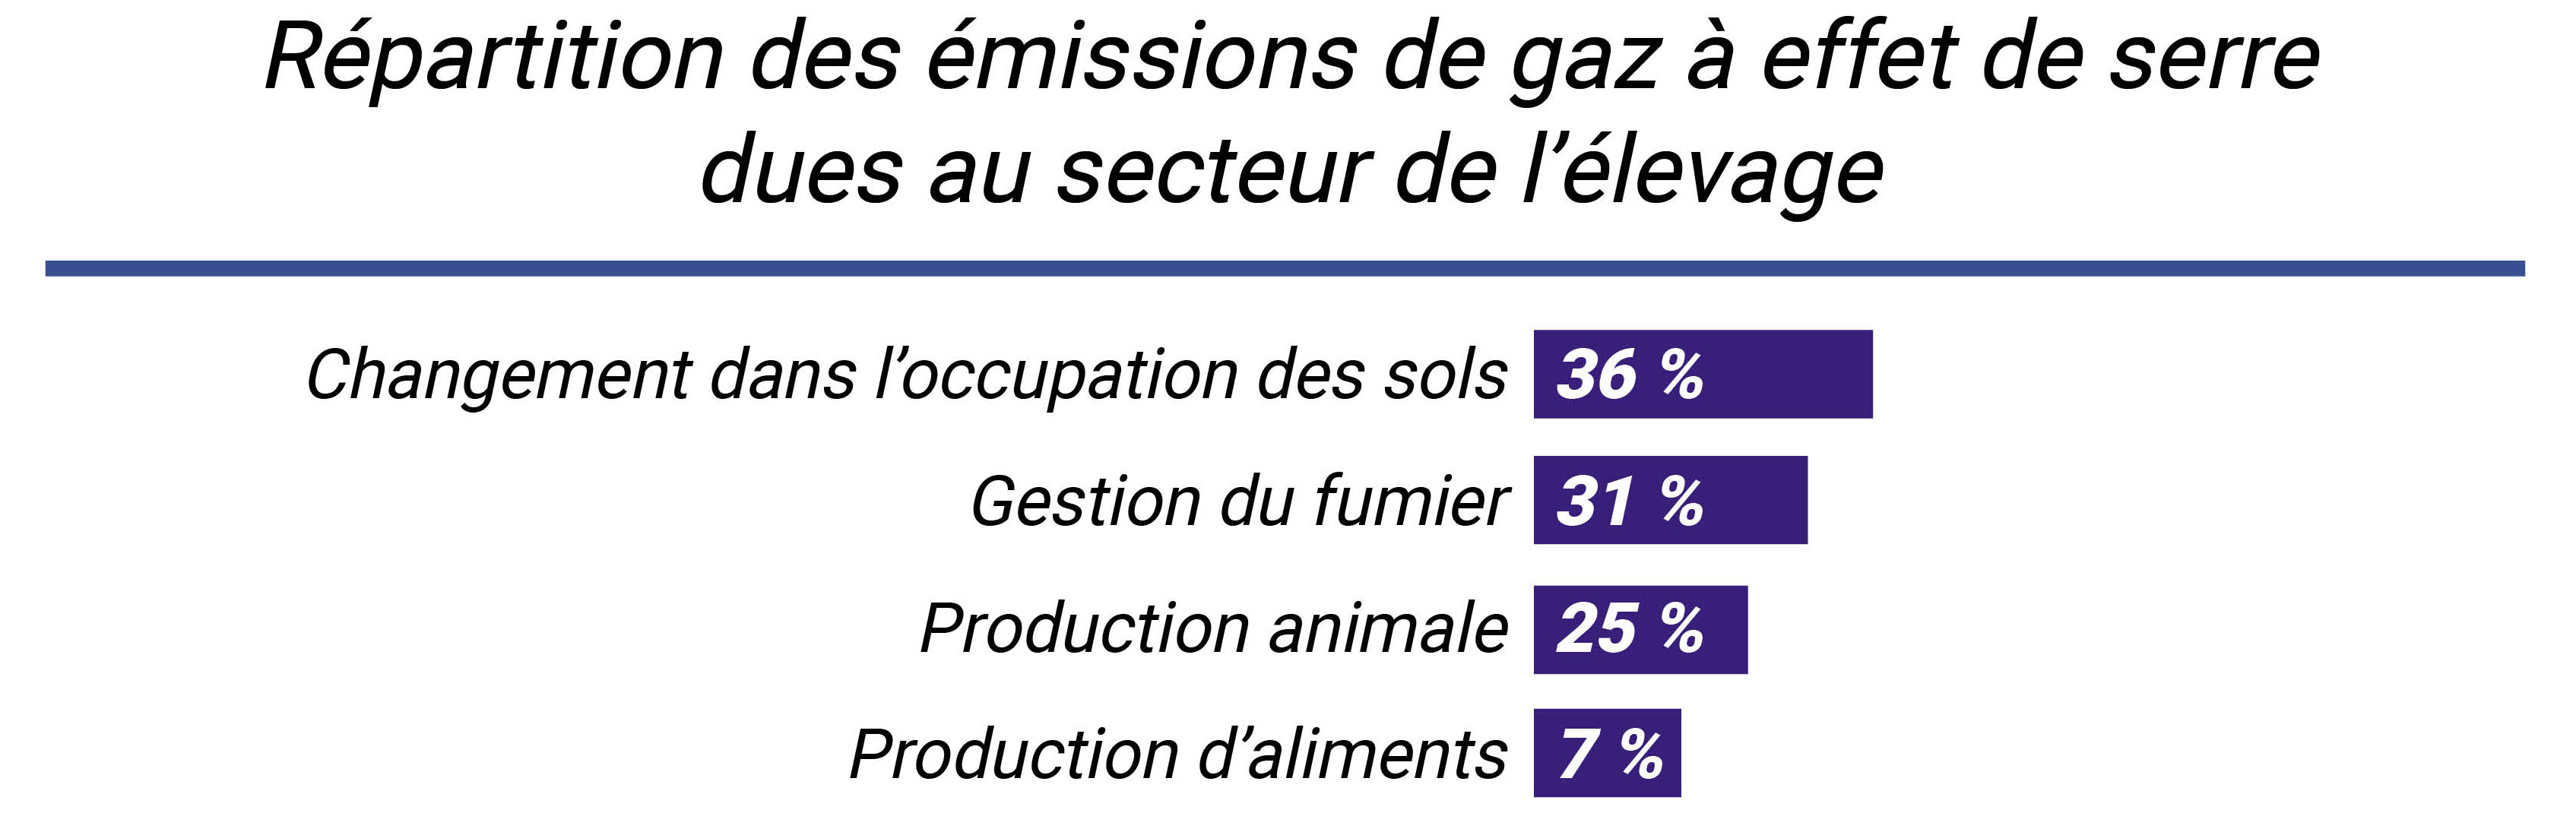 Répartition des émissions de gaz à effet de serre dues au secteur de l'élevage